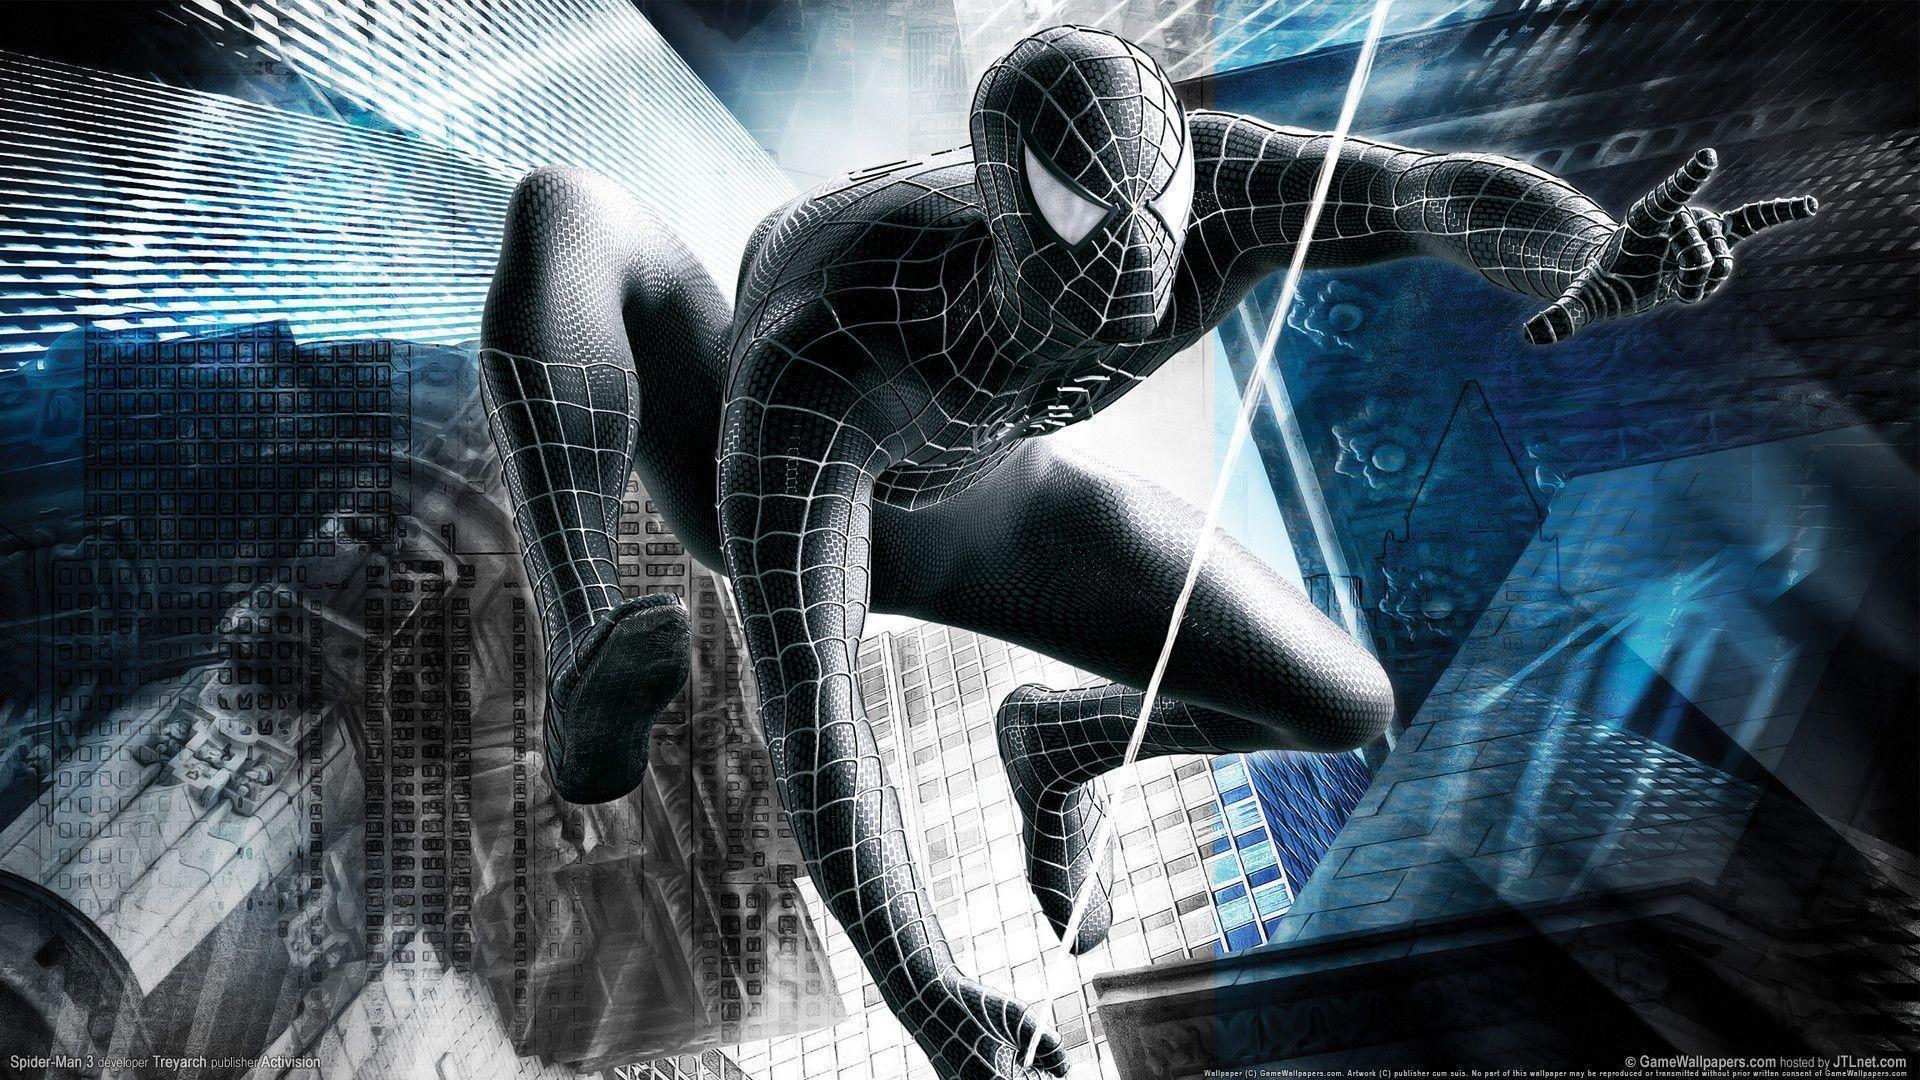 Spider Man 3 HD background in 1920x1080 resolution. HD